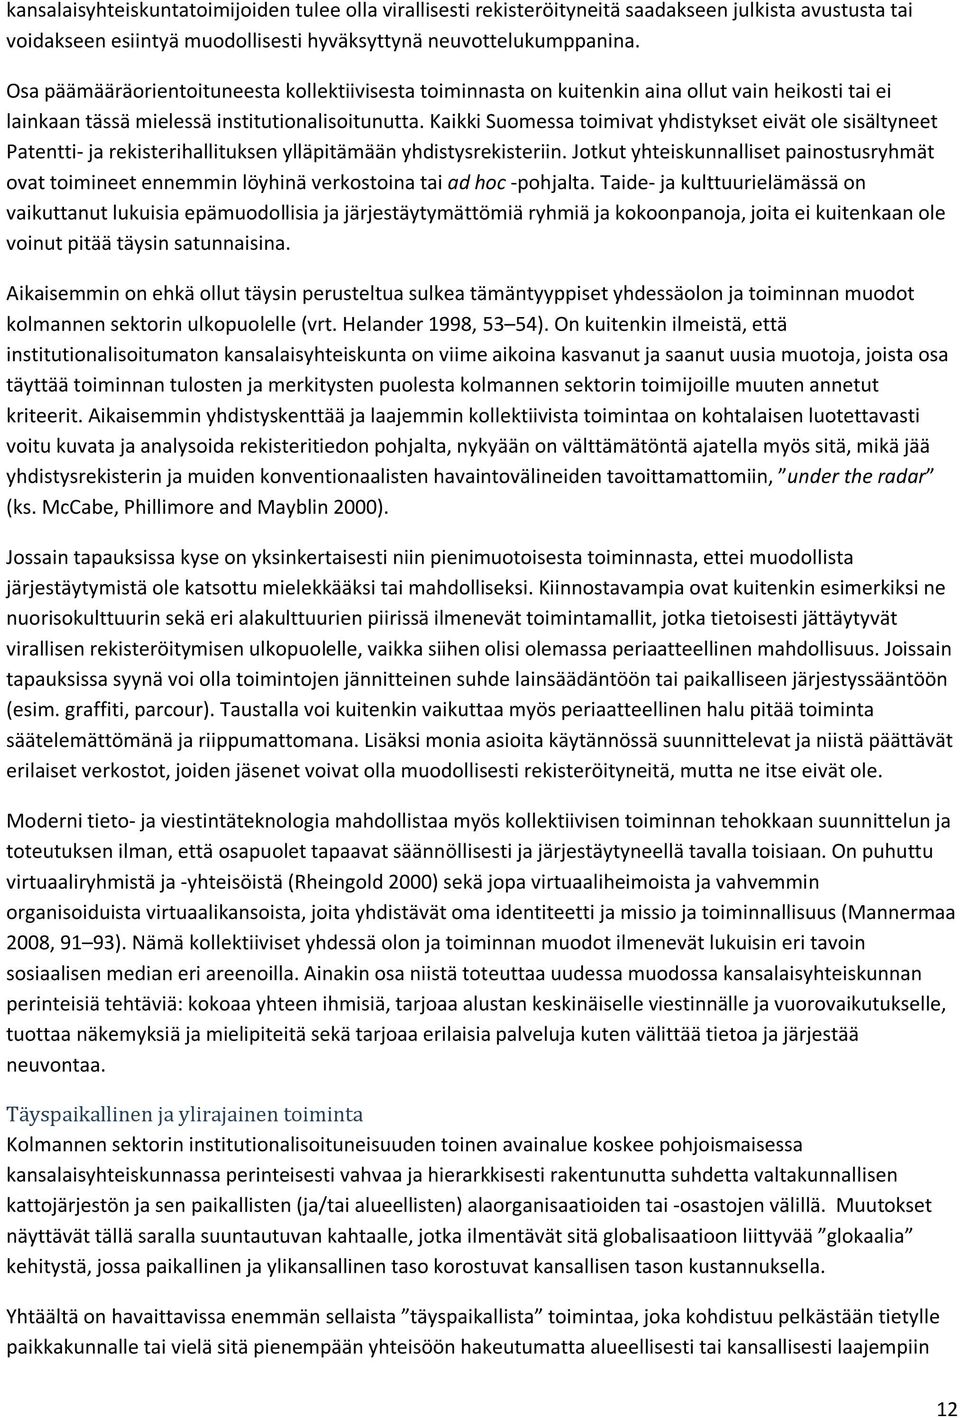 Kaikki Suomessa toimivat yhdistykset eivät ole sisältyneet Patentti- ja rekisterihallituksen ylläpitämään yhdistysrekisteriin.